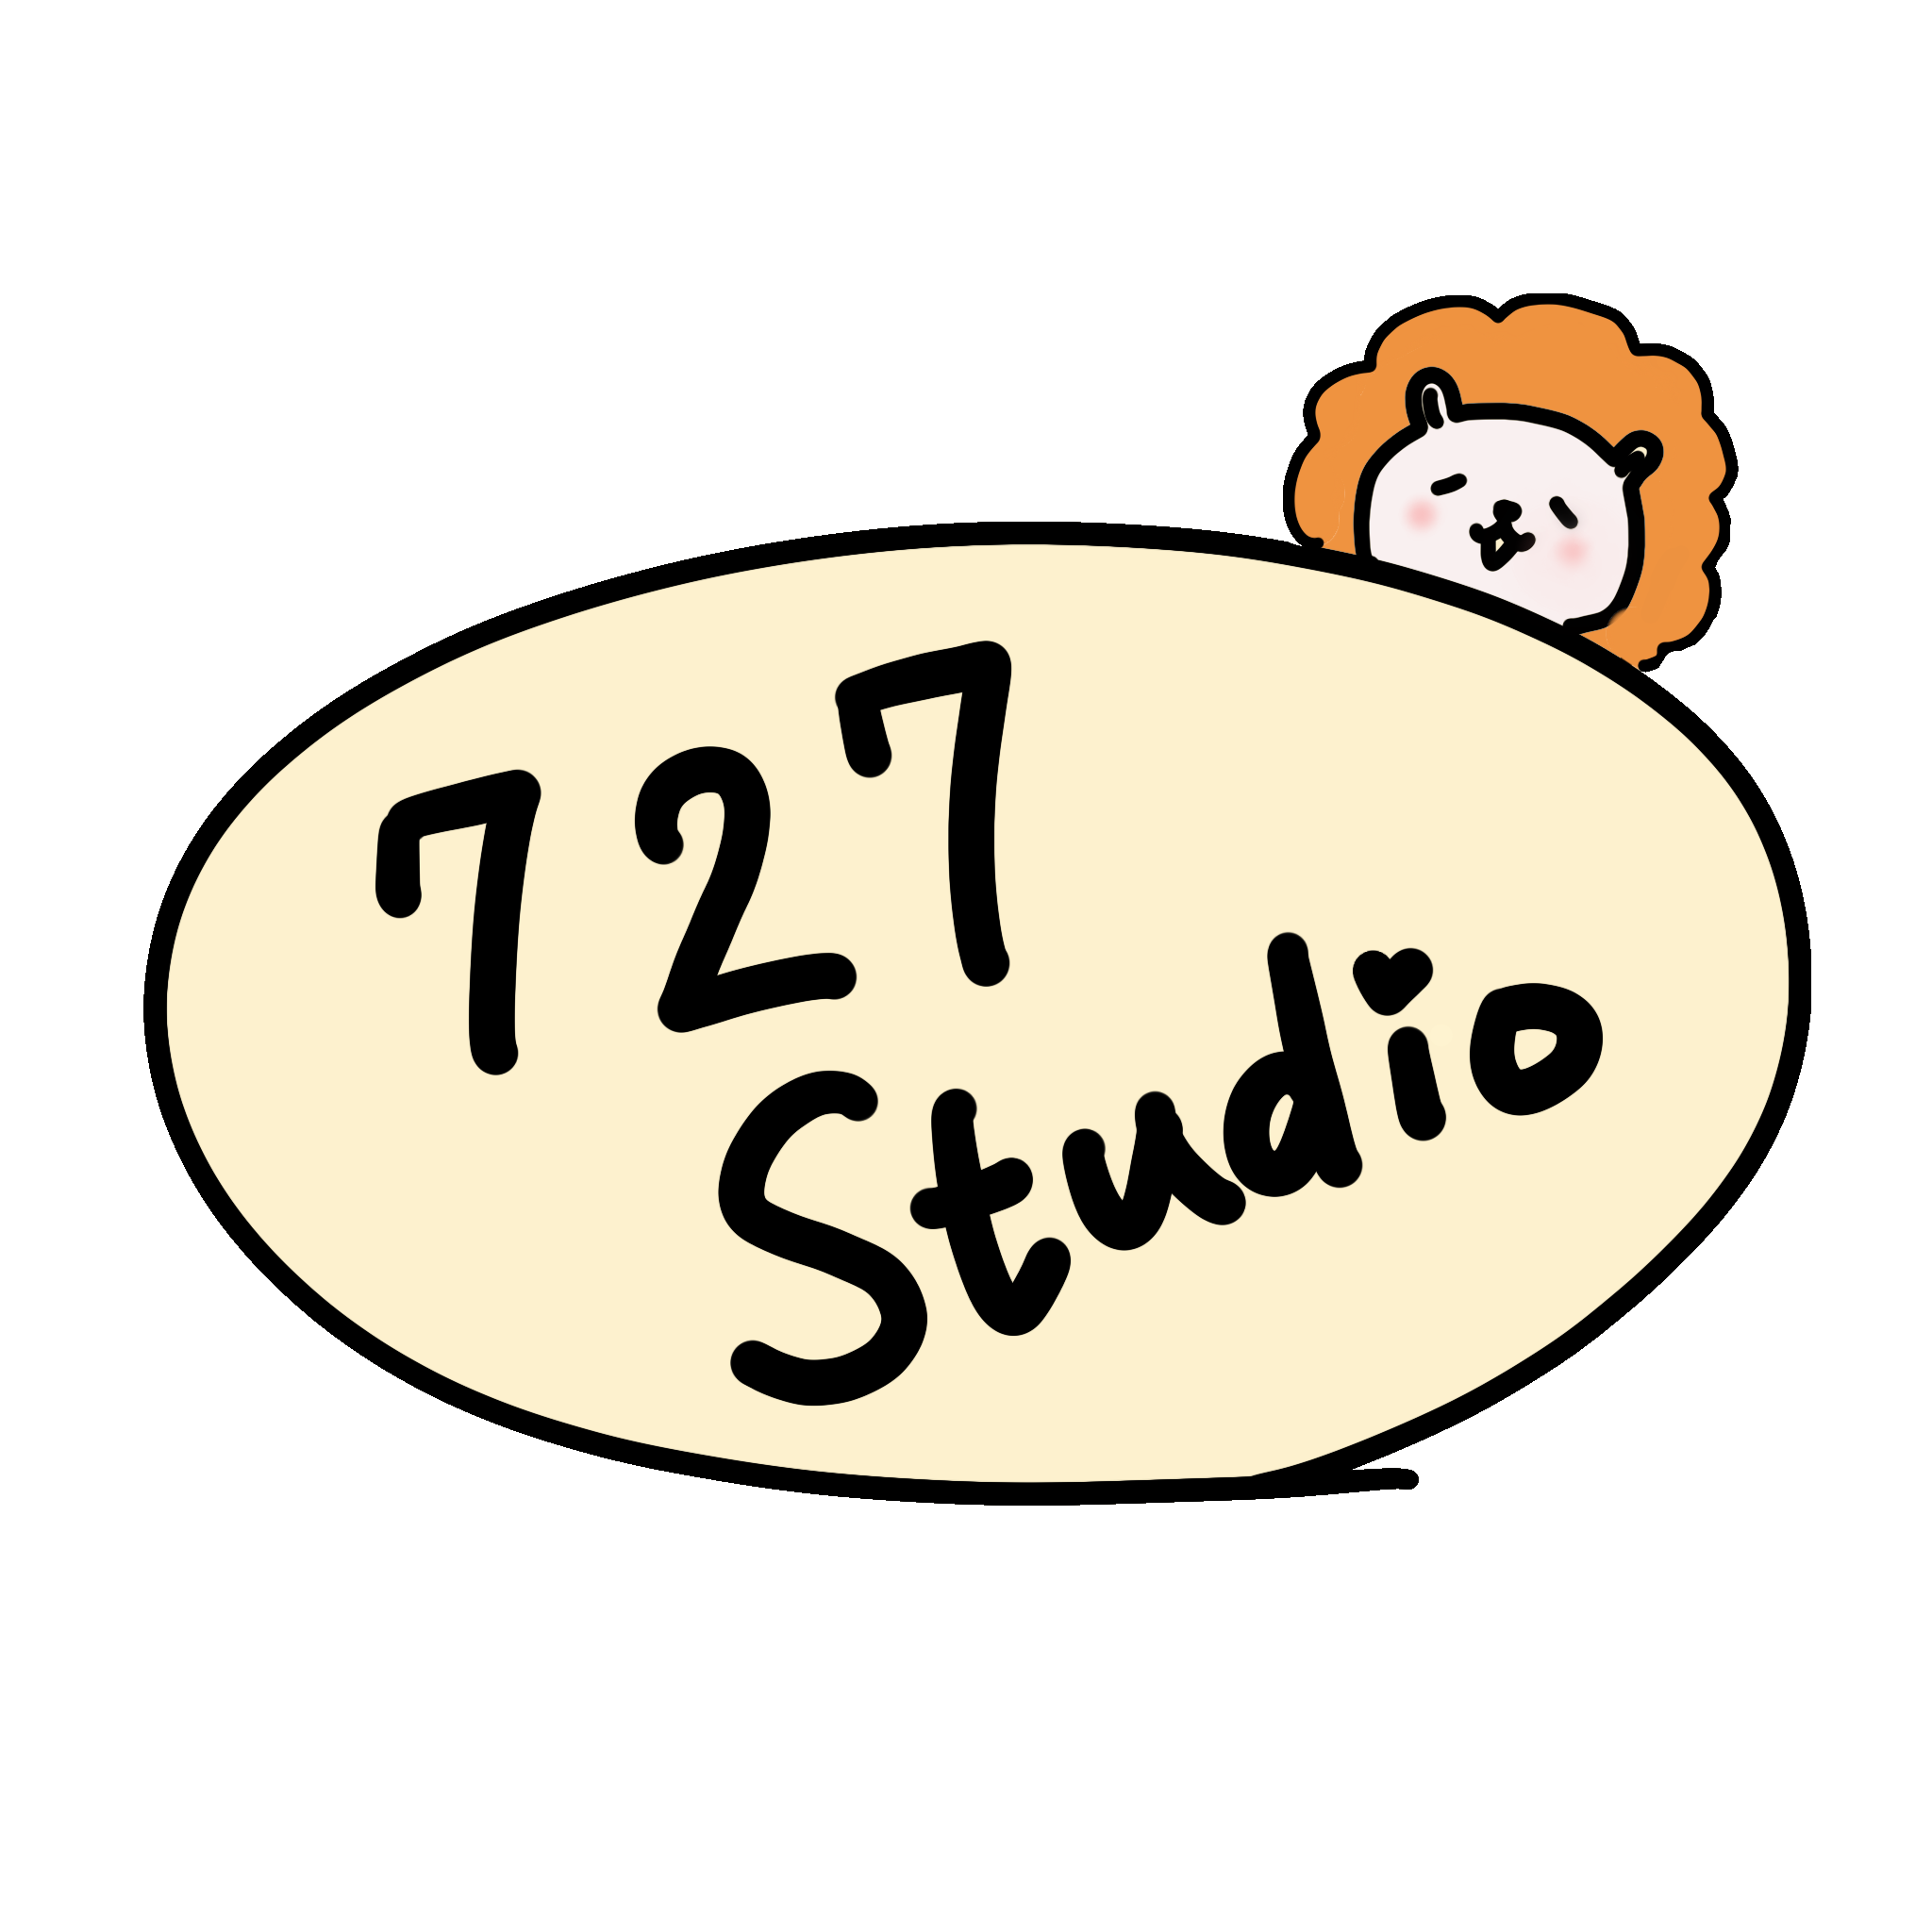 727 STUDIO